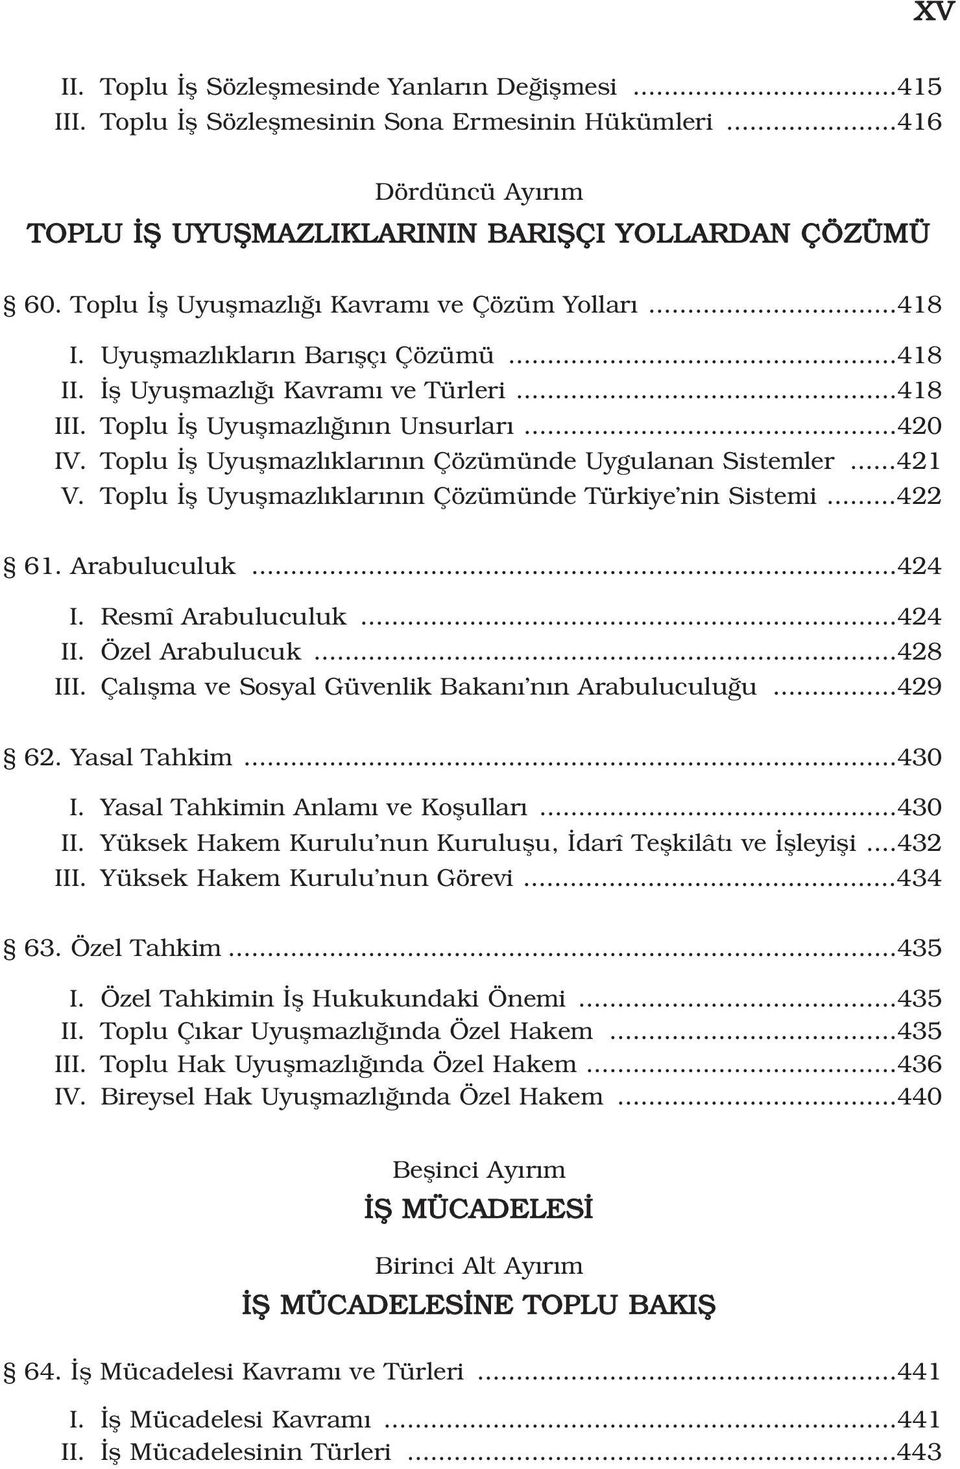 Toplu fl Uyuflmazl klar n n Çözümünde Uygulanan Sistemler...421 V. Toplu fl Uyuflmazl klar n n Çözümünde Türkiye nin Sistemi...422 61. Arabuluculuk...424 I. Resmî Arabuluculuk...424 II.